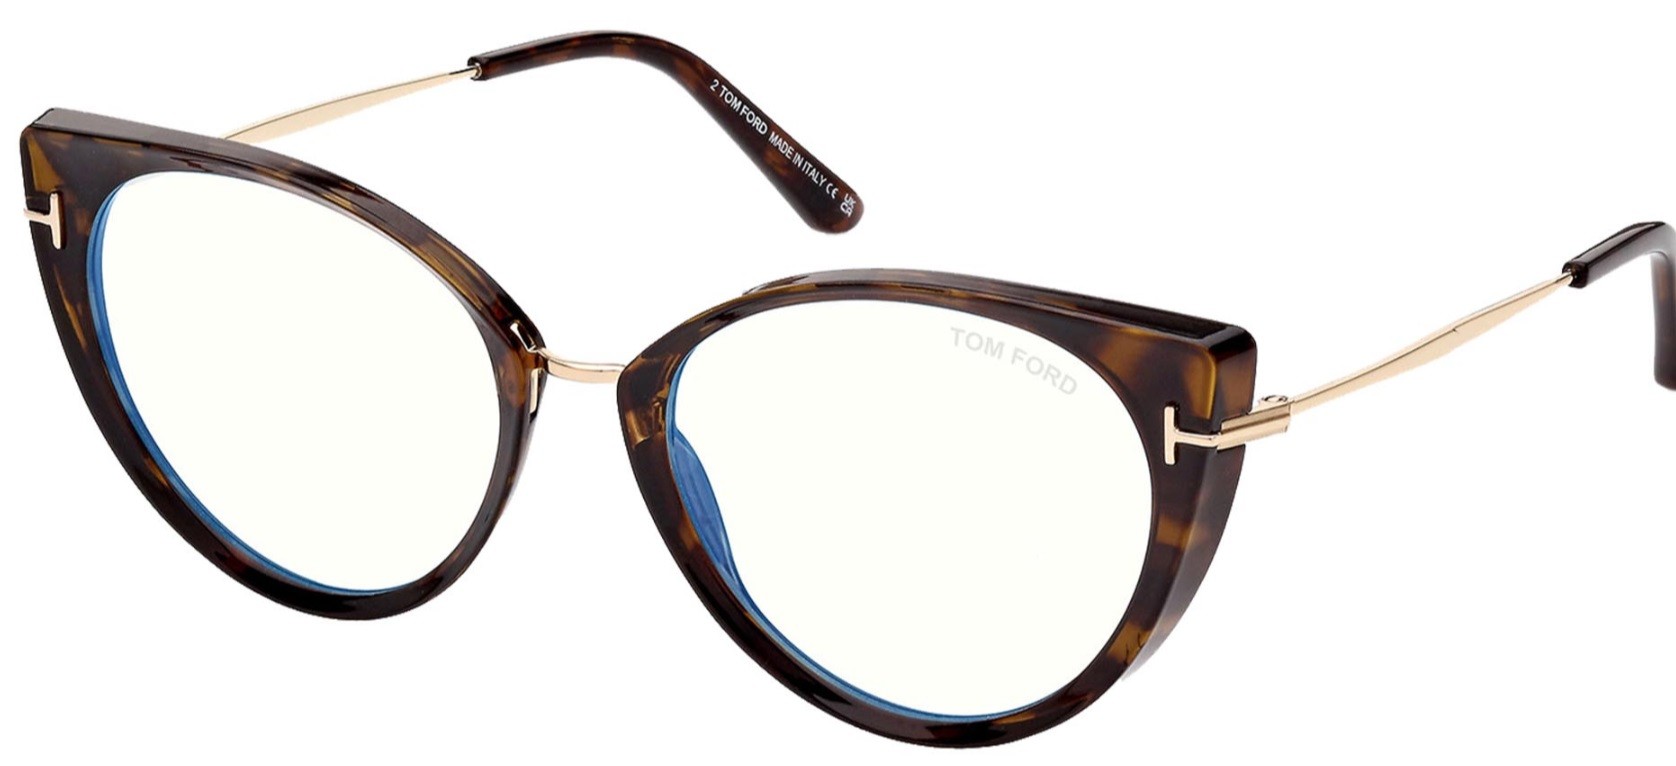 Tom Ford 5815B 052 - Oculos com Blue Block